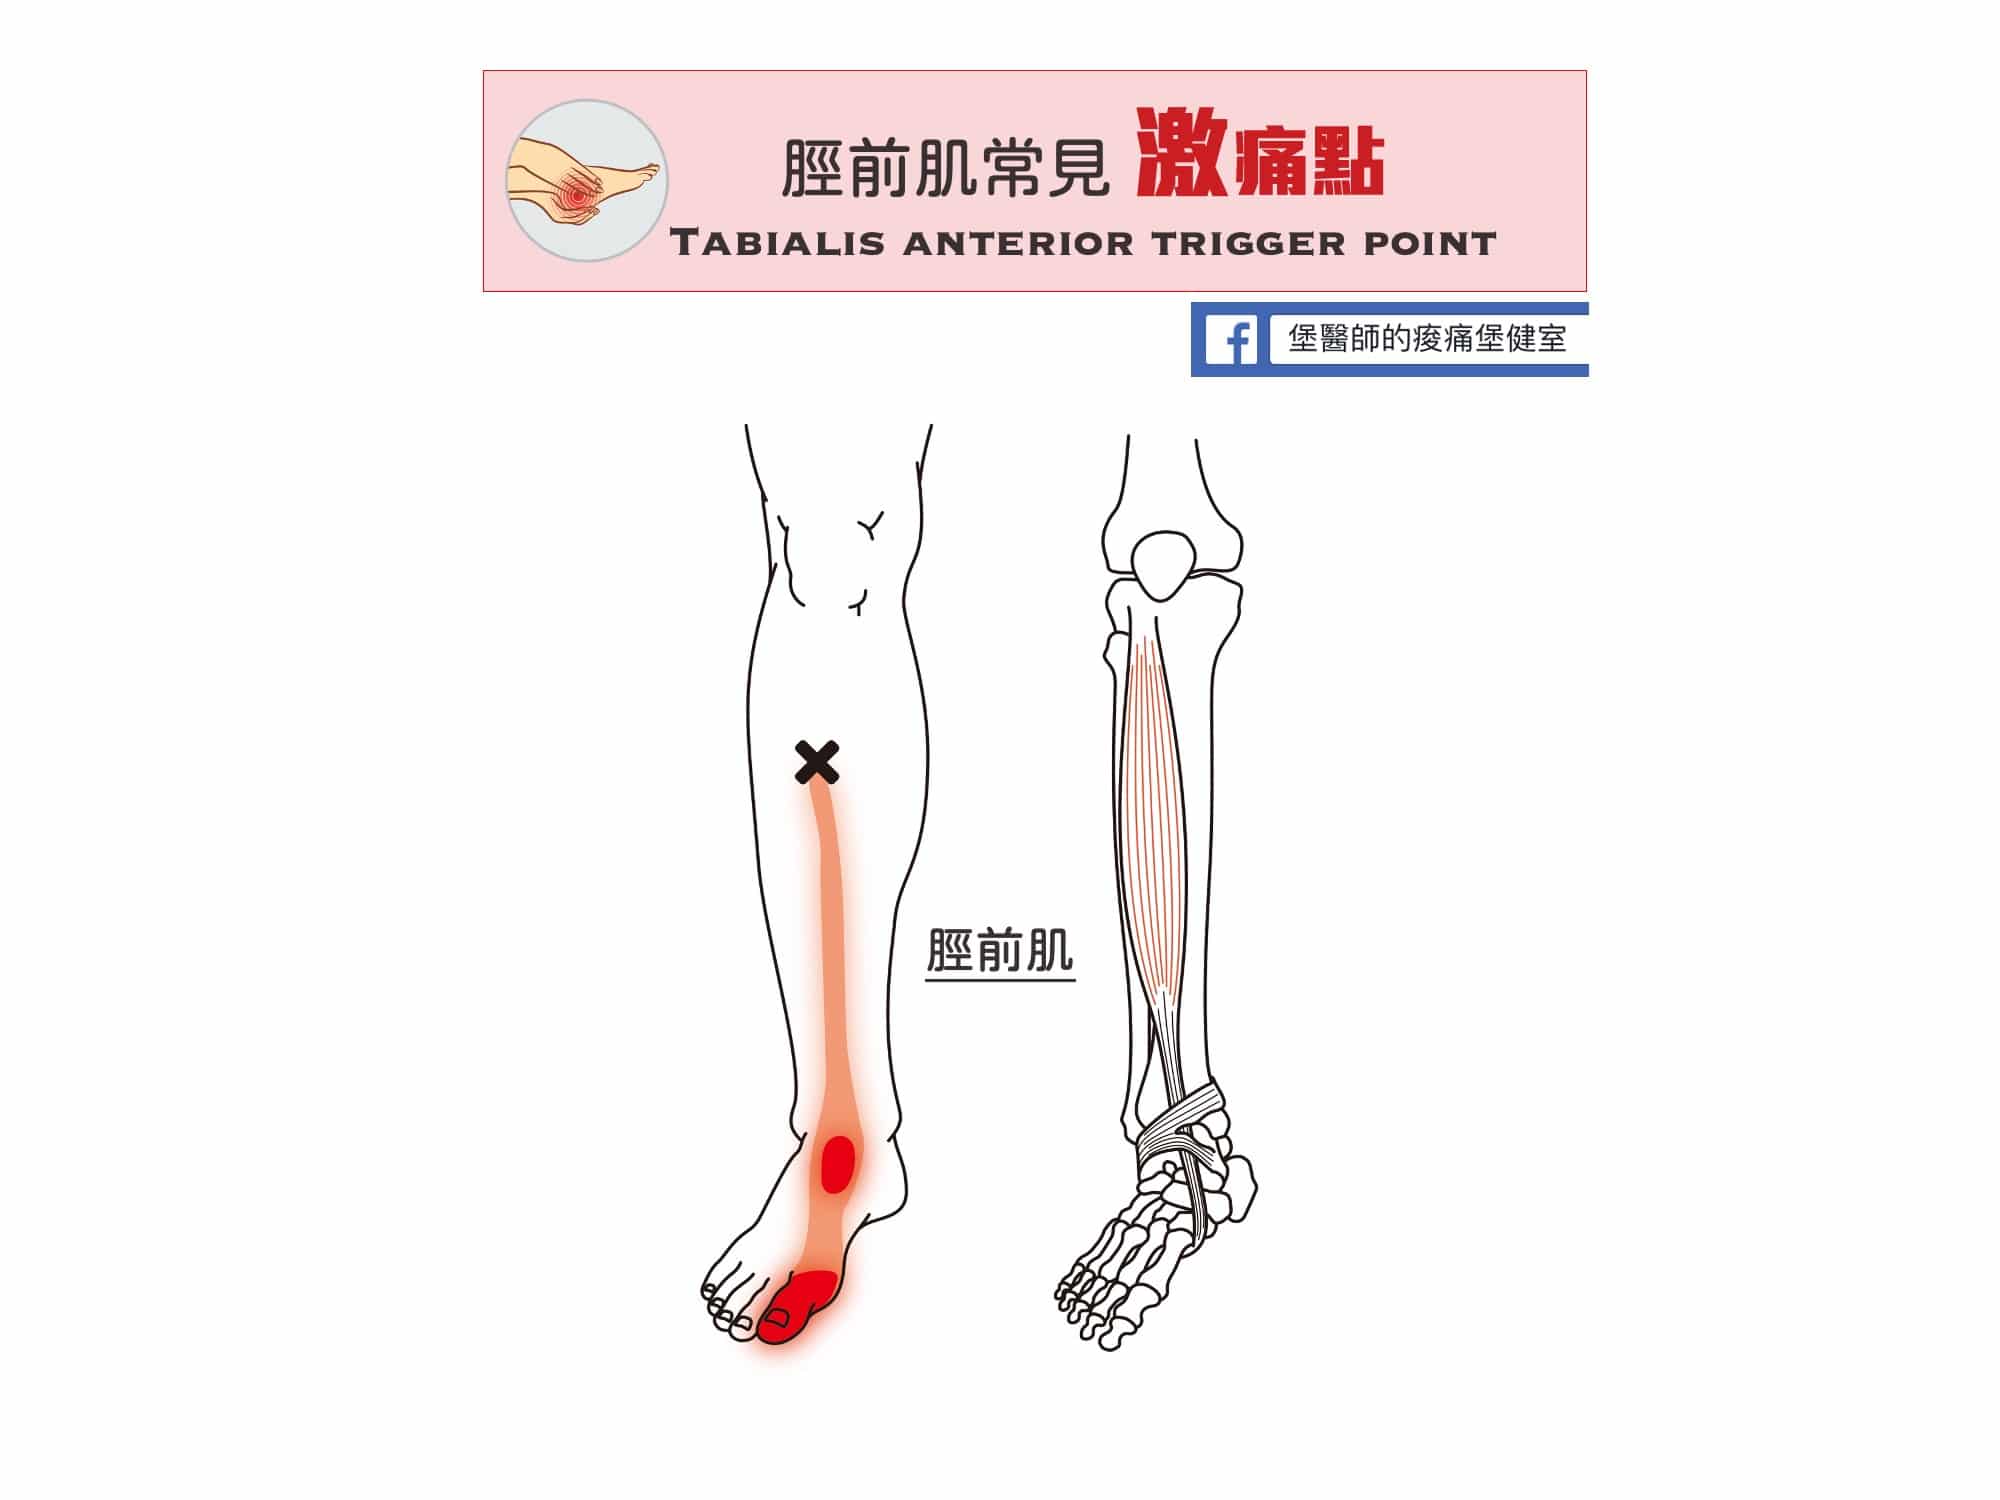 足部腳踝小腿痛-脛前肌常見激痛點